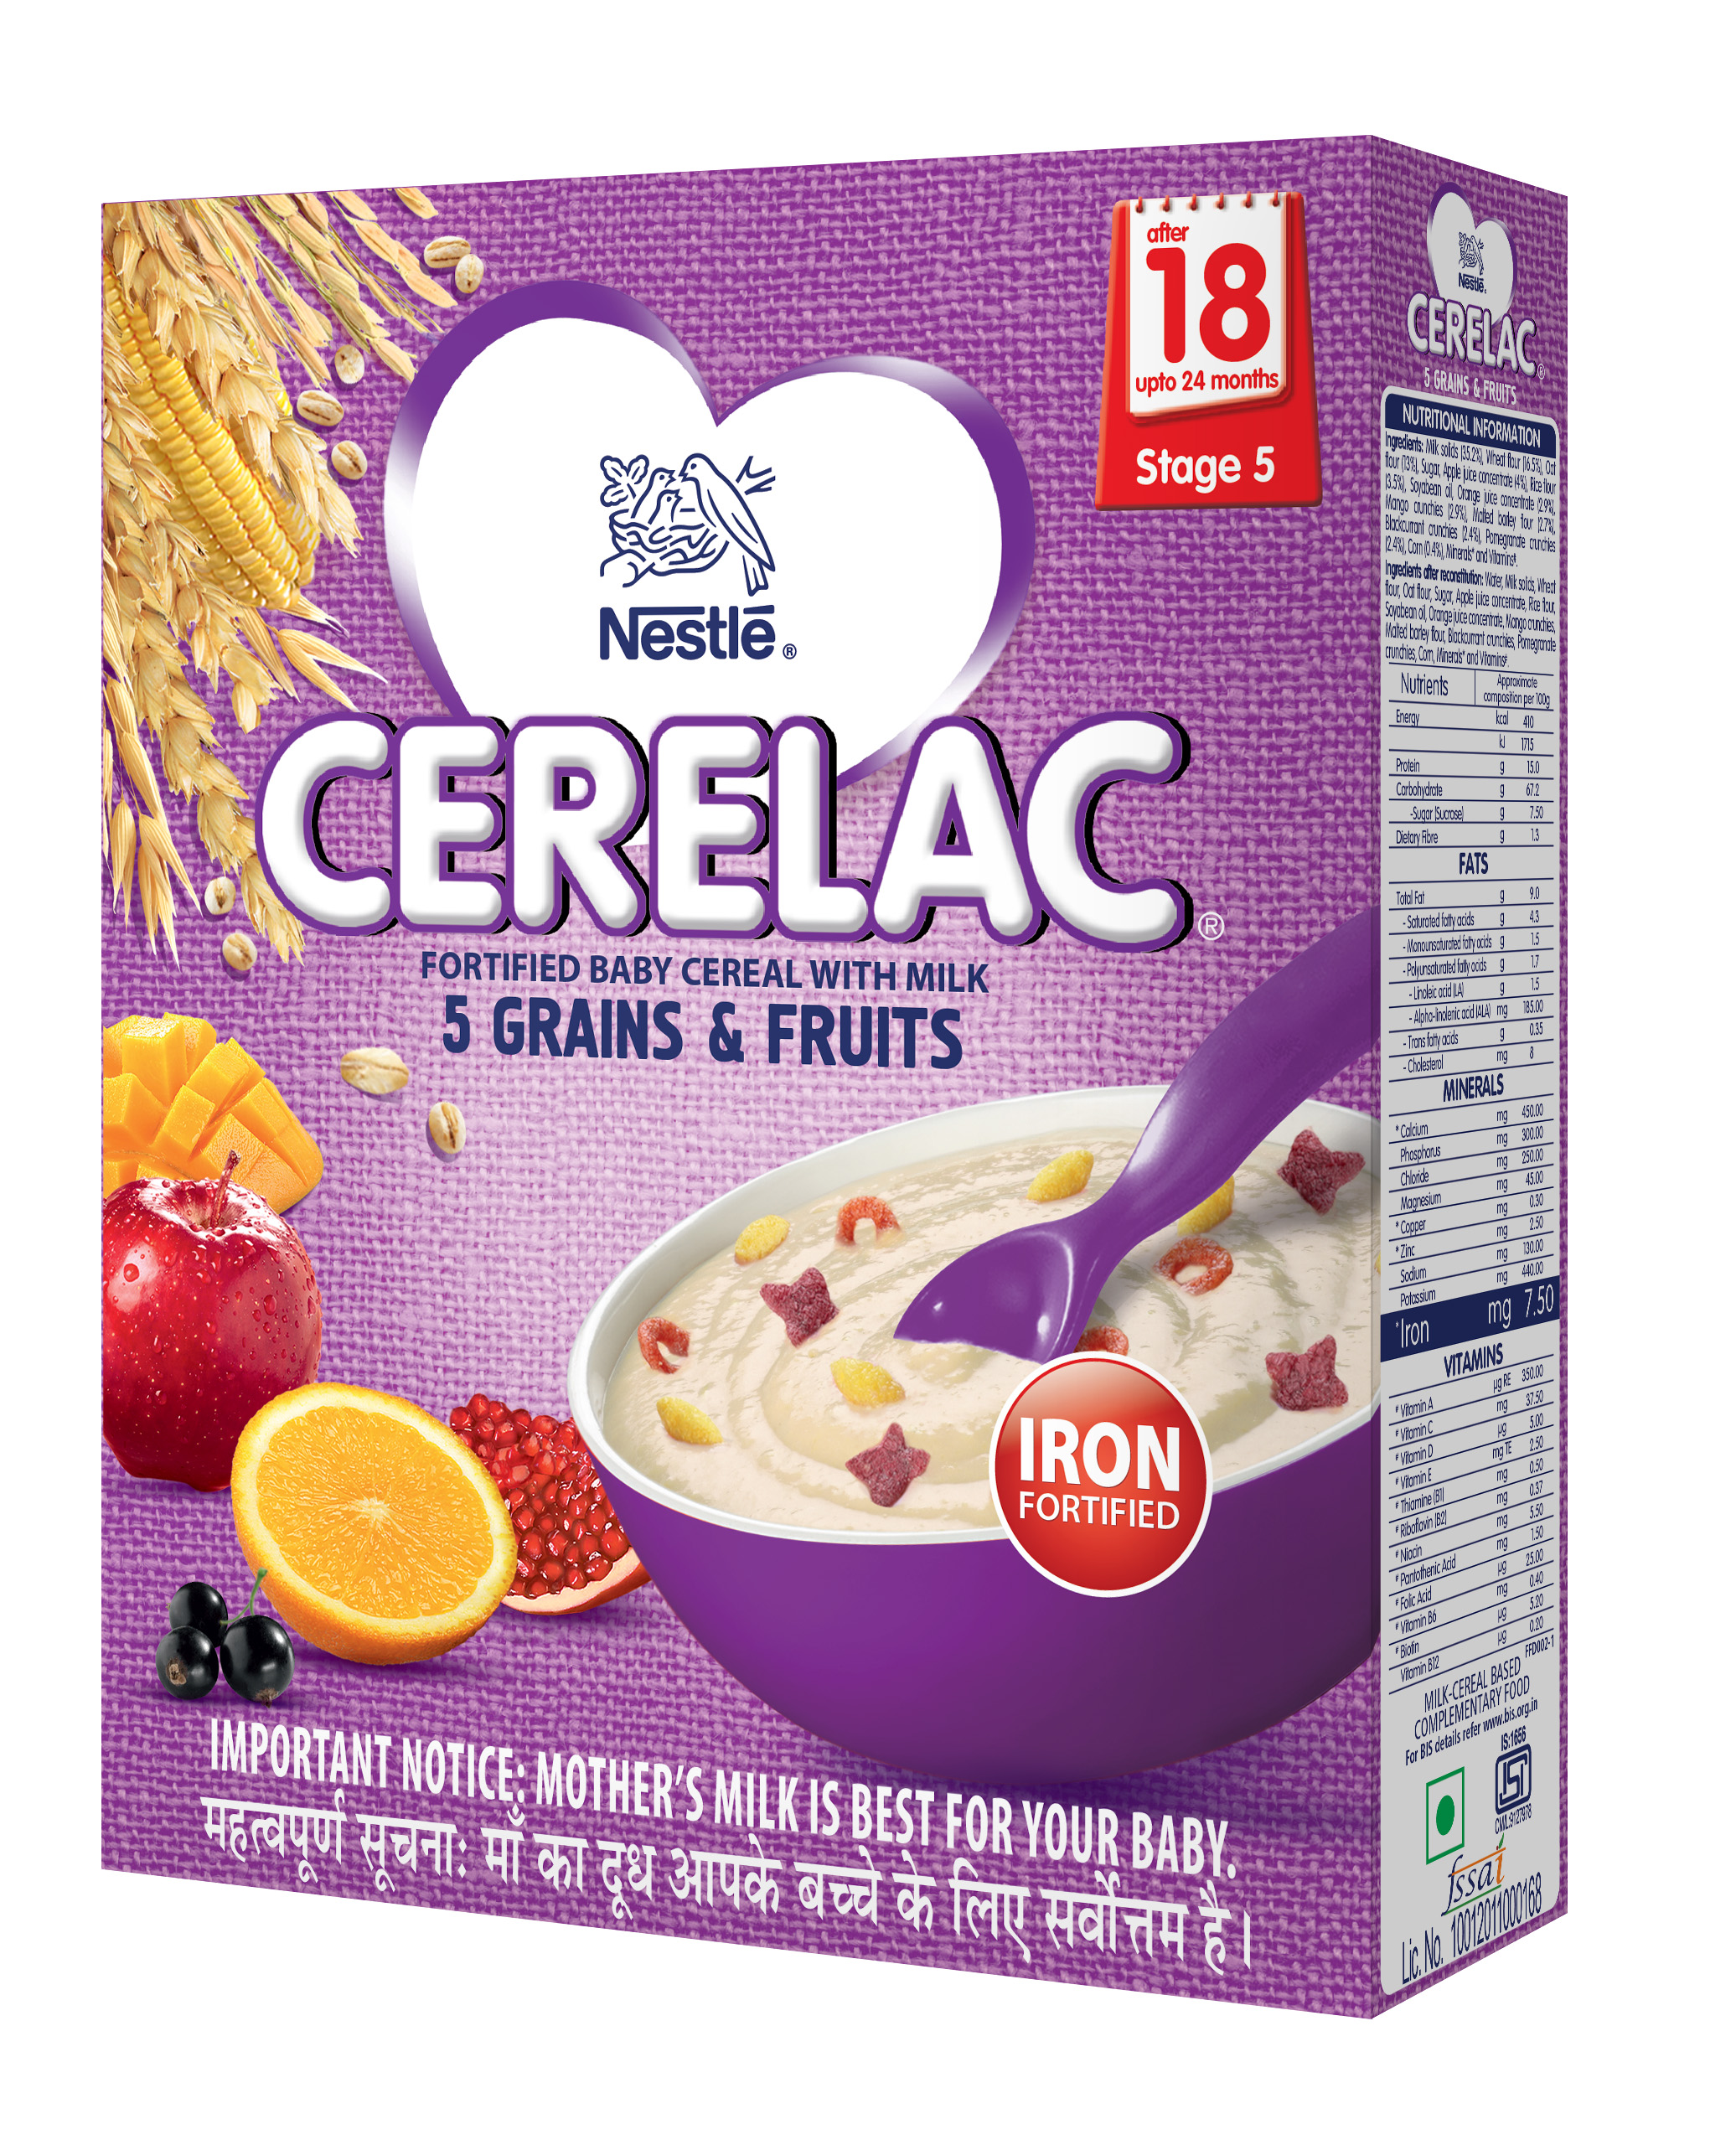 CERELAC 5 GRAINS & FRUITS